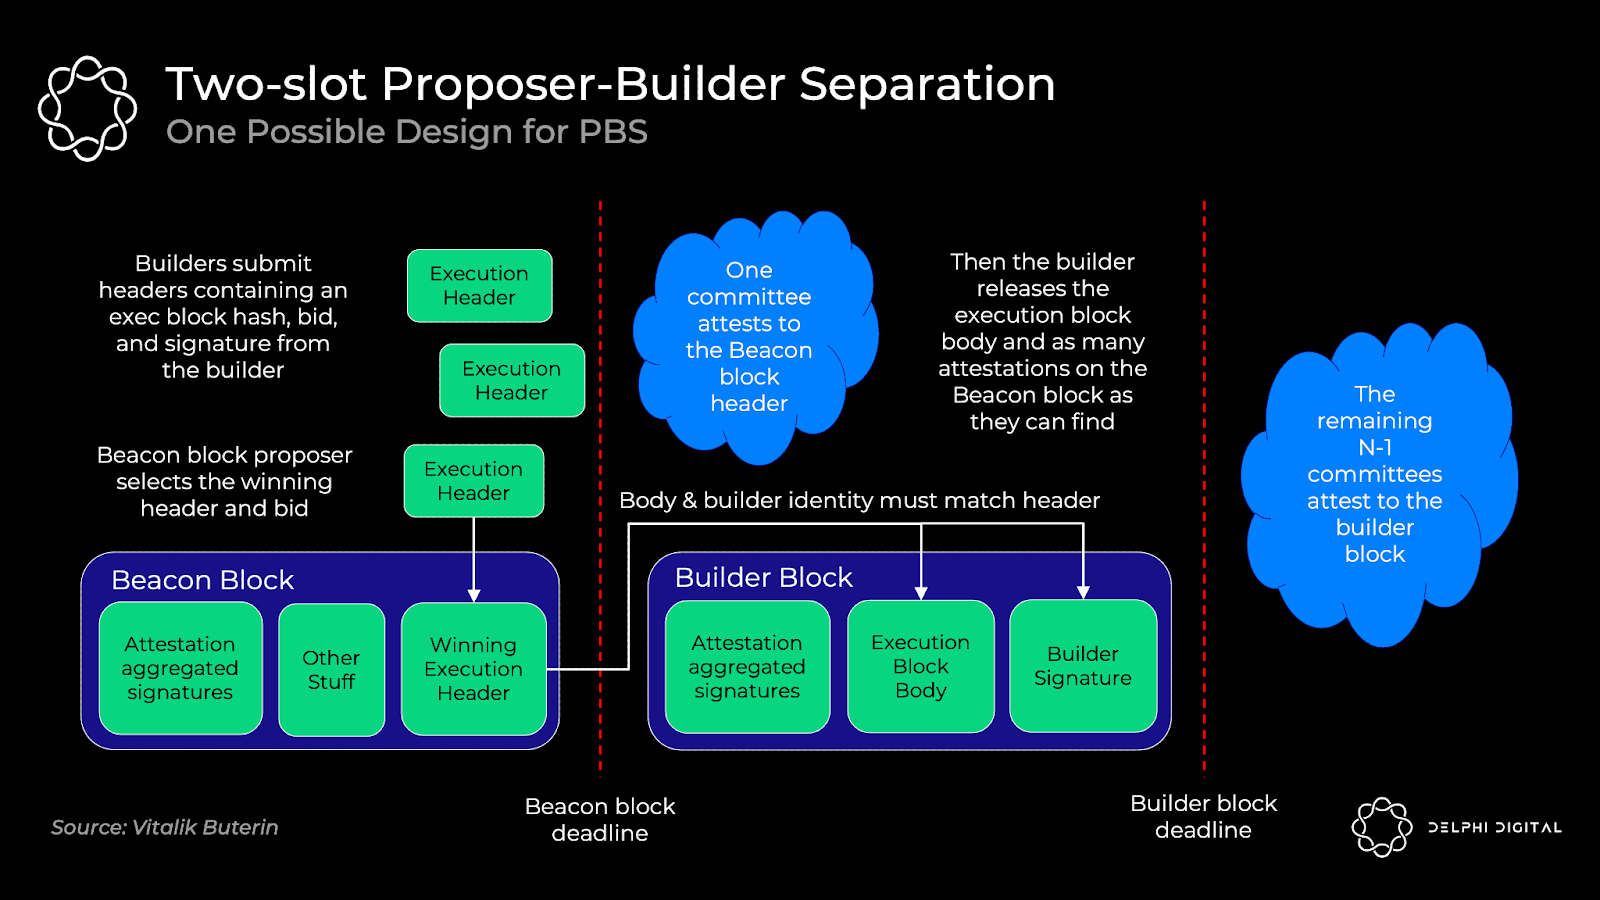 A proposed design for Proposer-Builder Separation in Ethereum